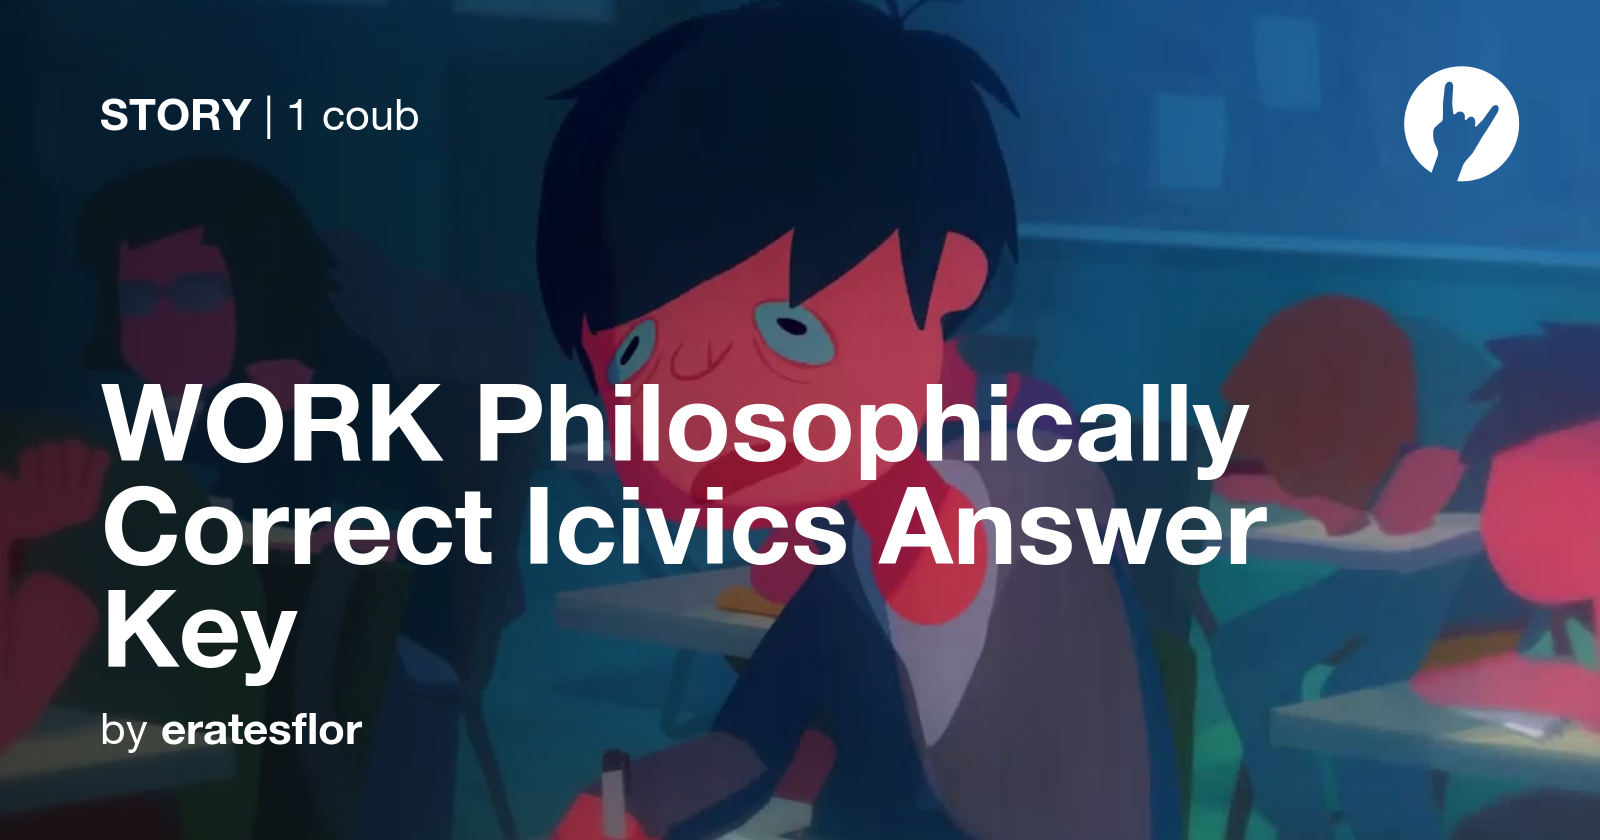 WORK Philosophically Correct Icivics Answer Key Coub